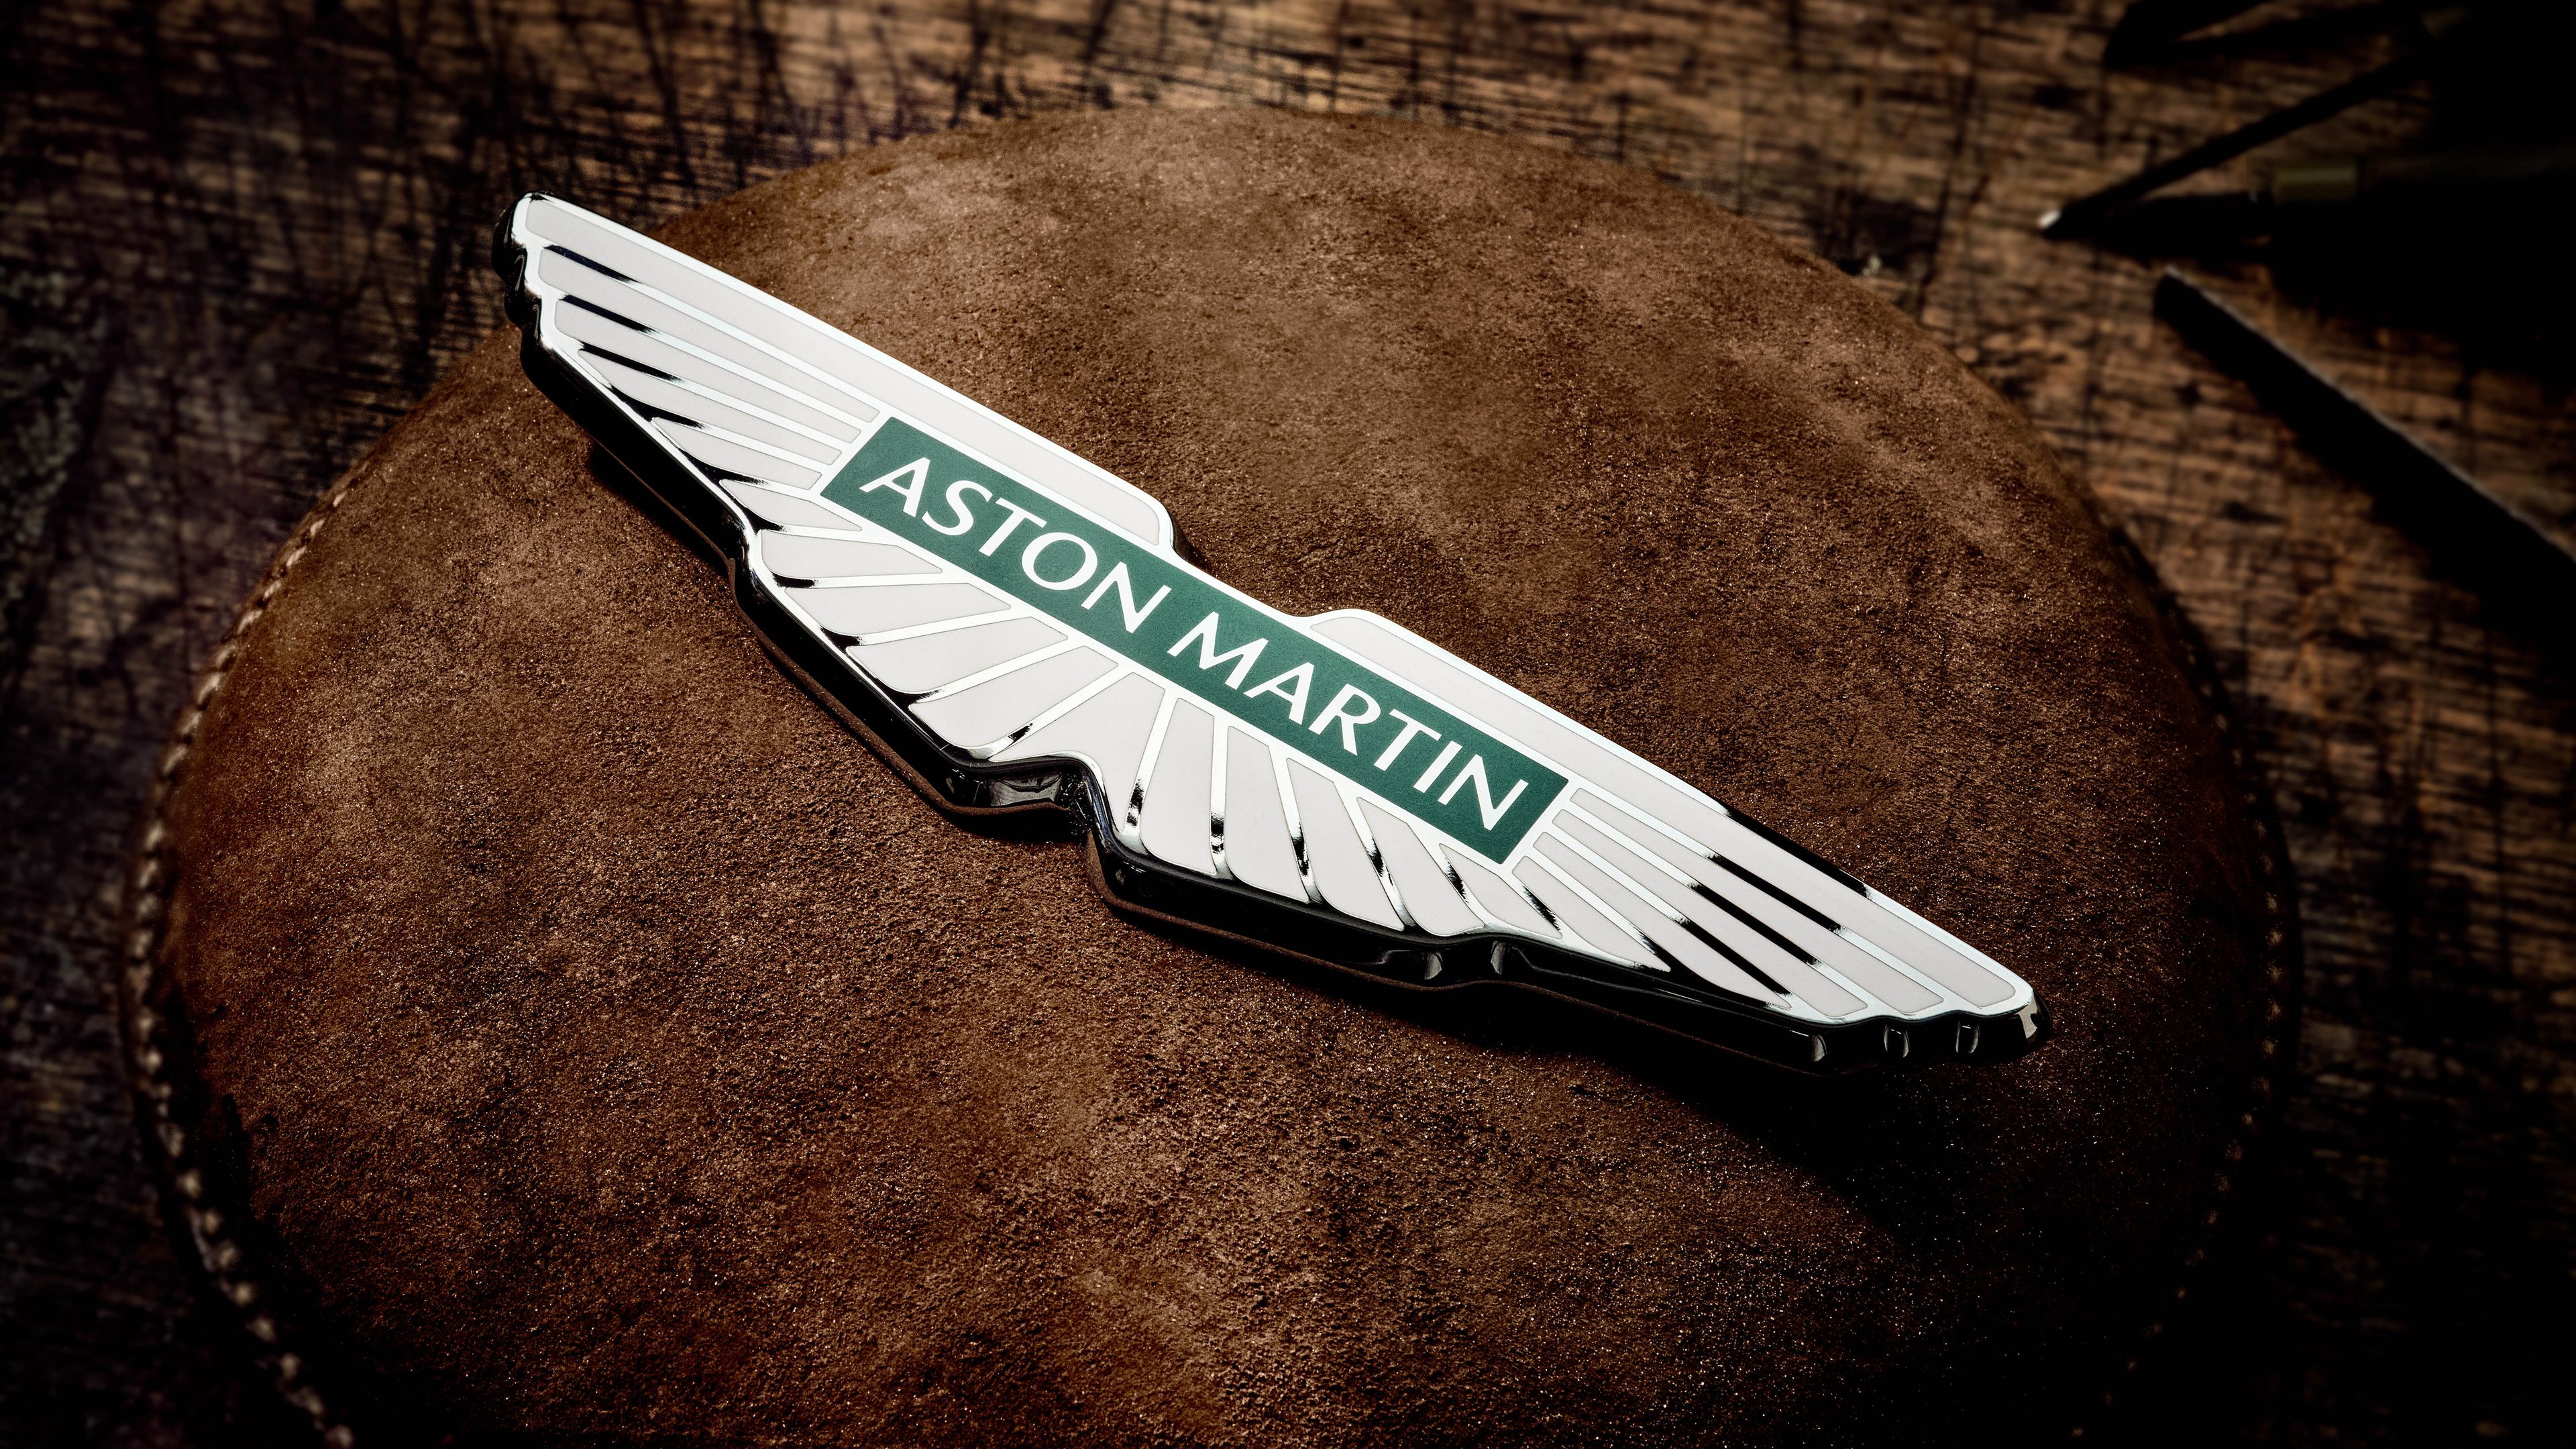 Nuevo logo de Aston Martin